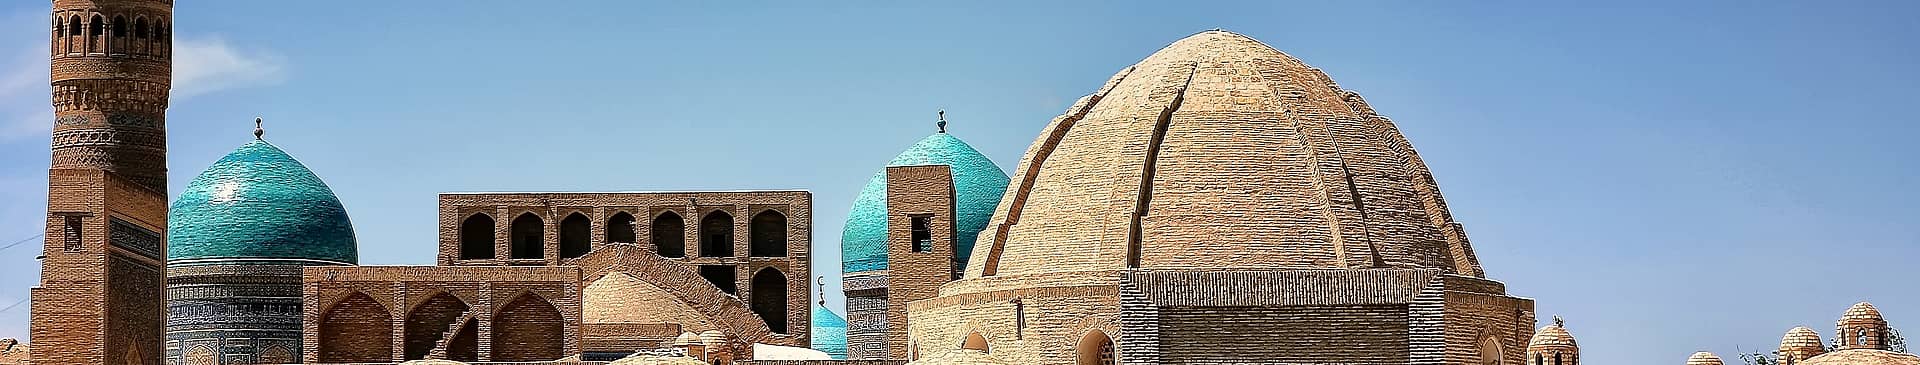 Uzbekistan in February